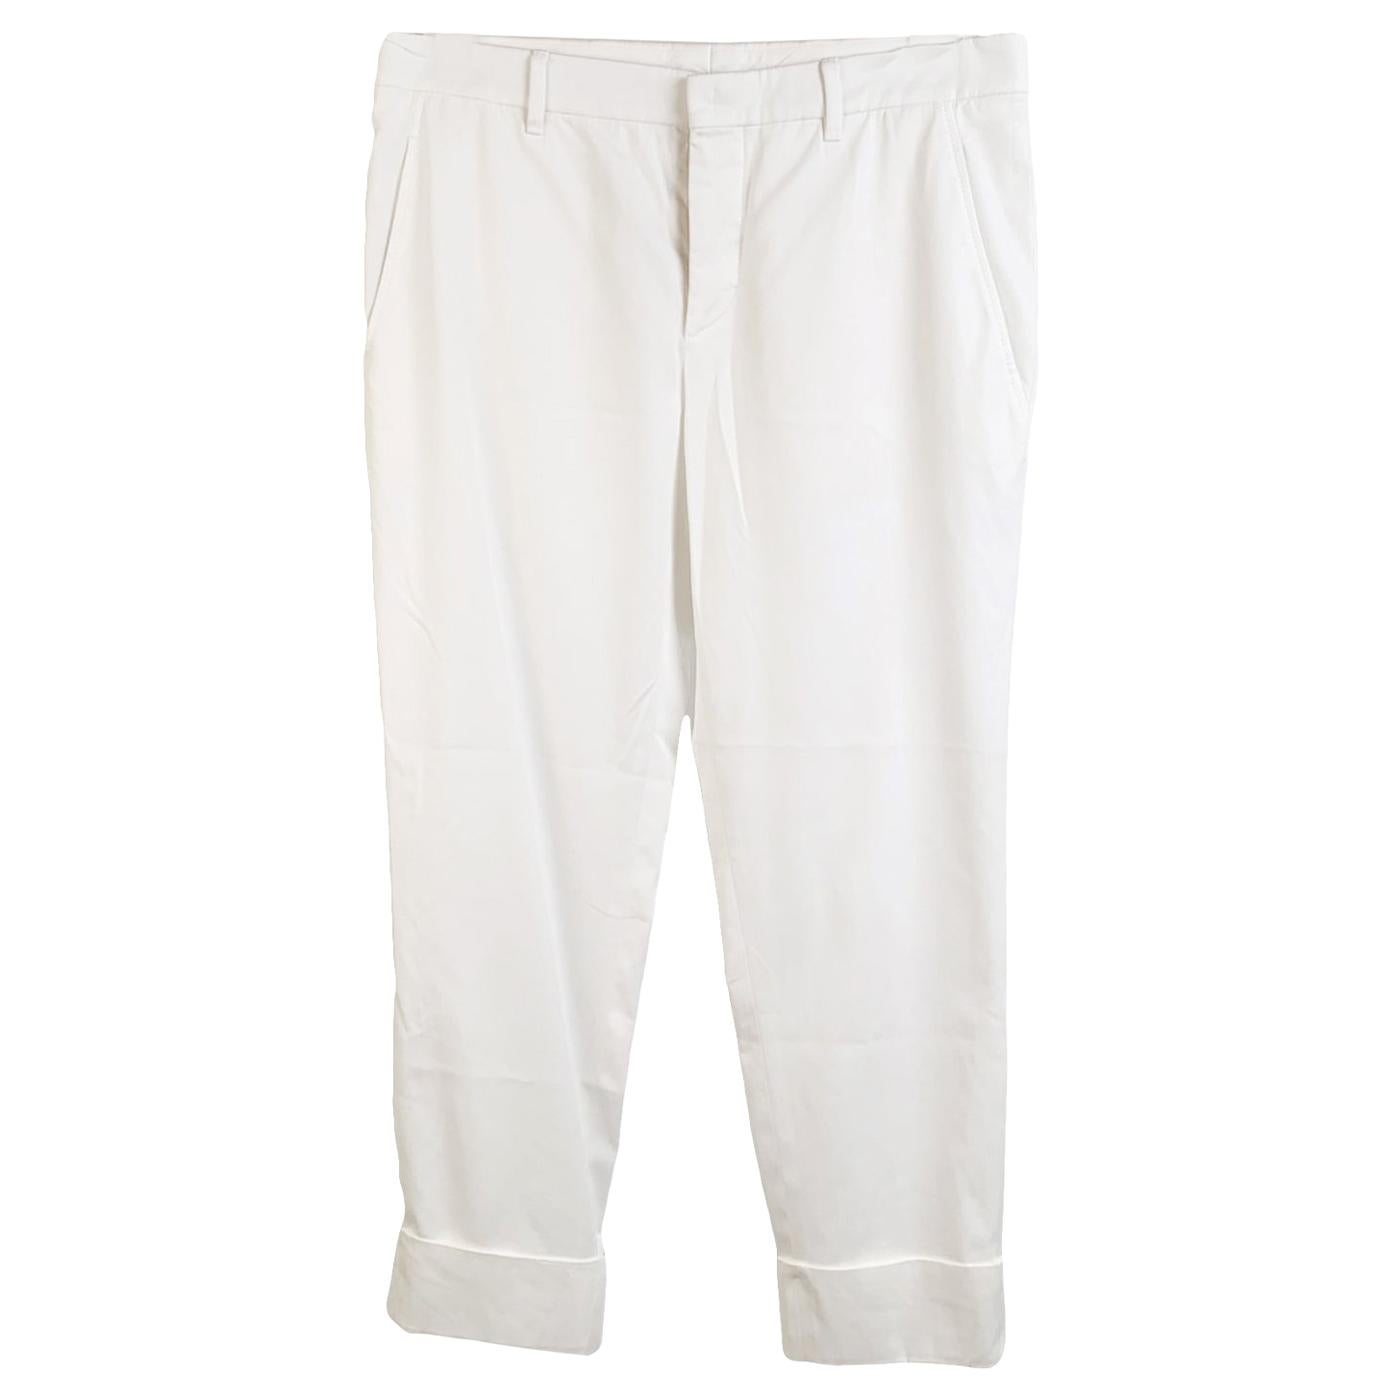 Miu Miu White Stretch Cotton Trousers Pants Size 40